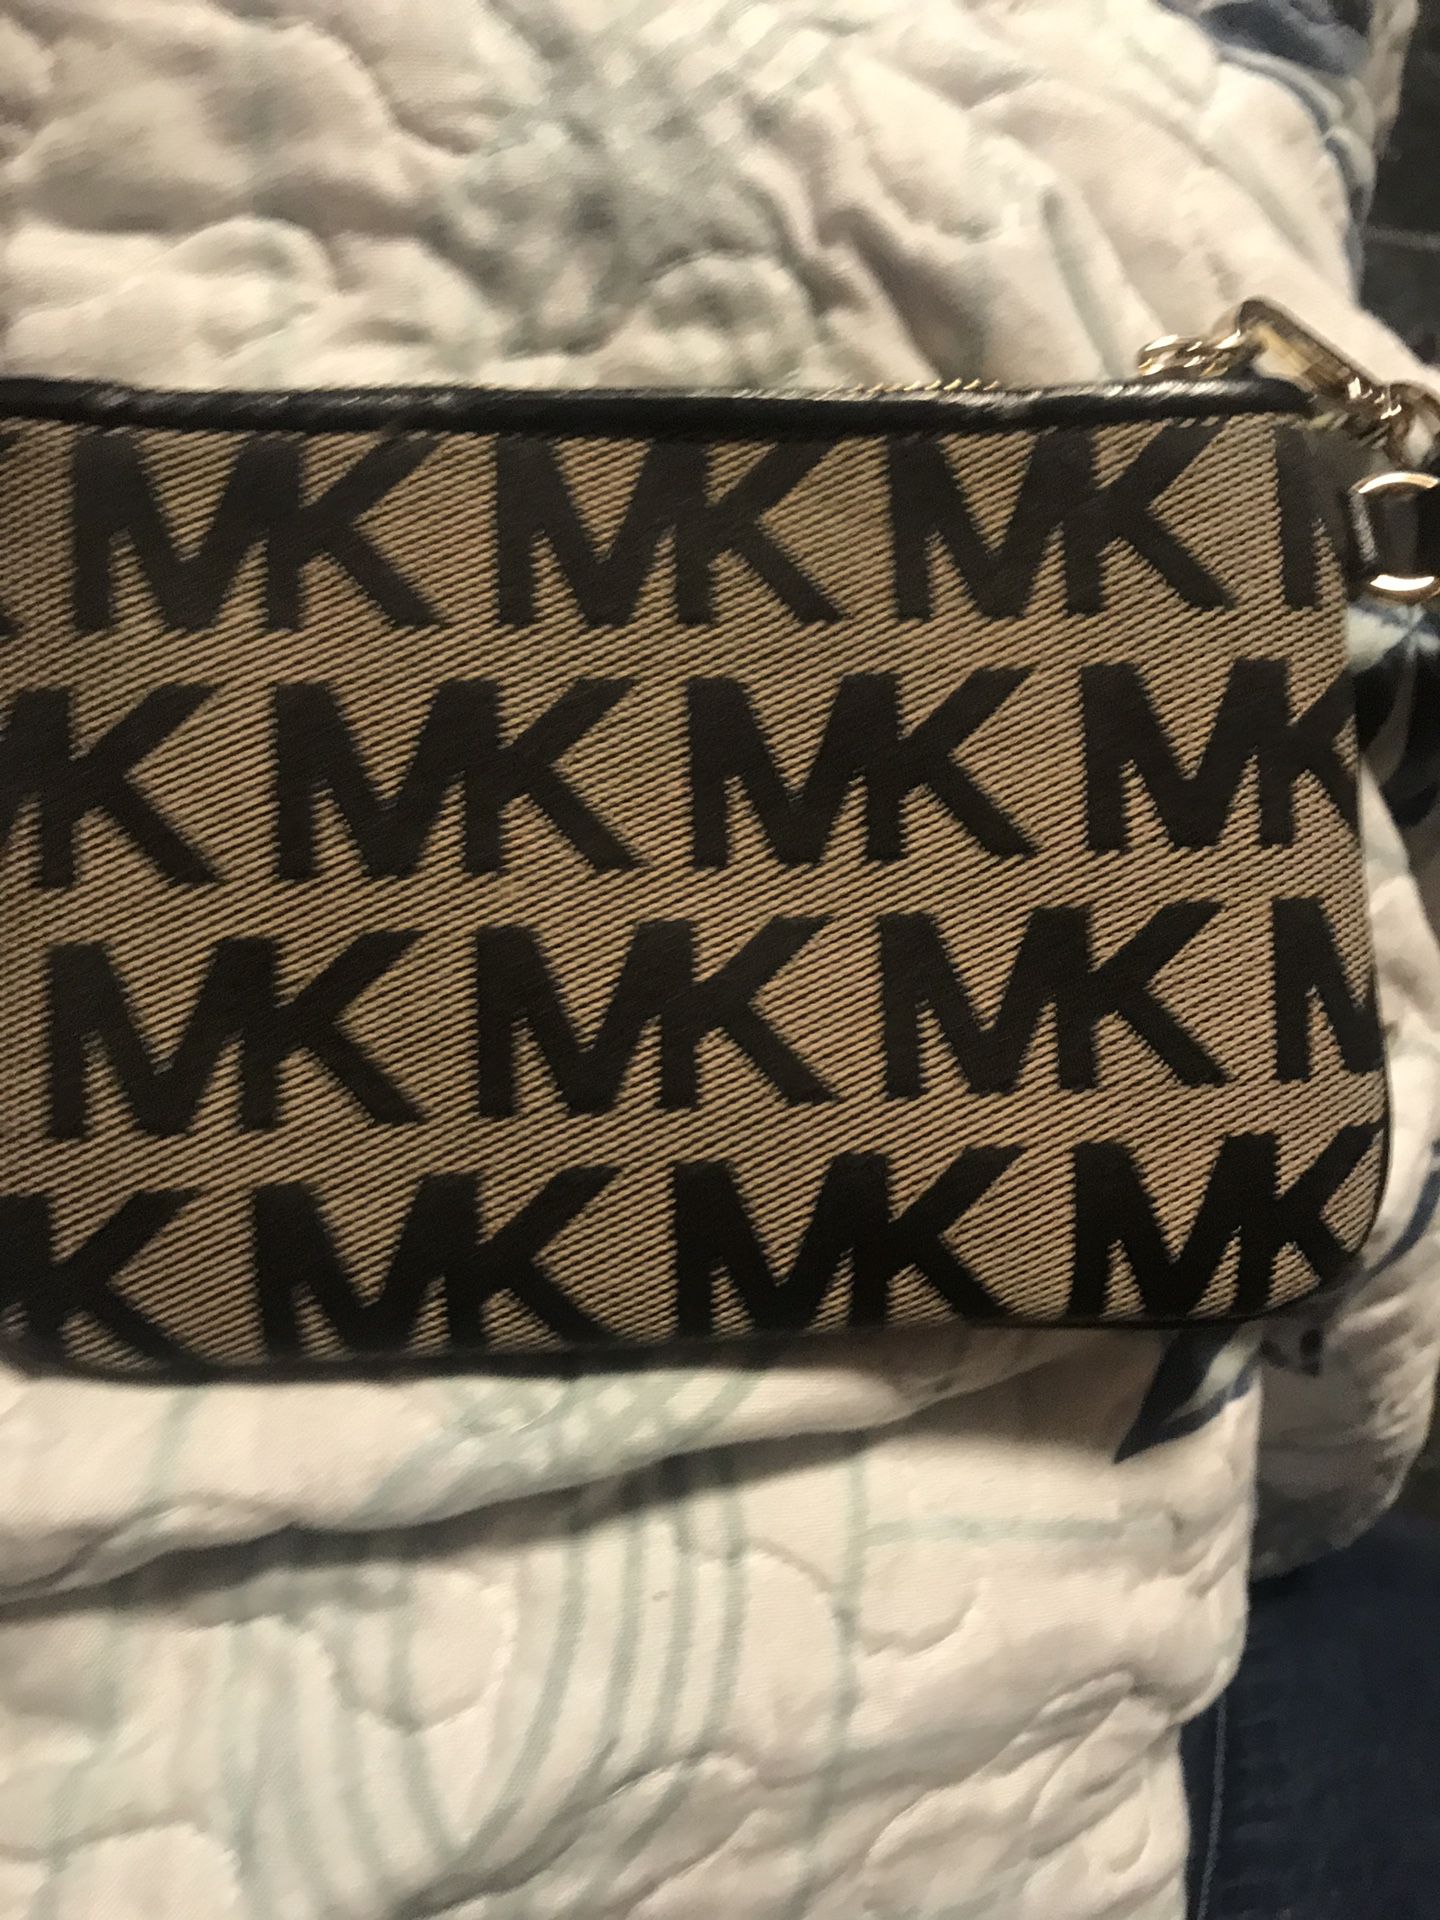 MK coin bag